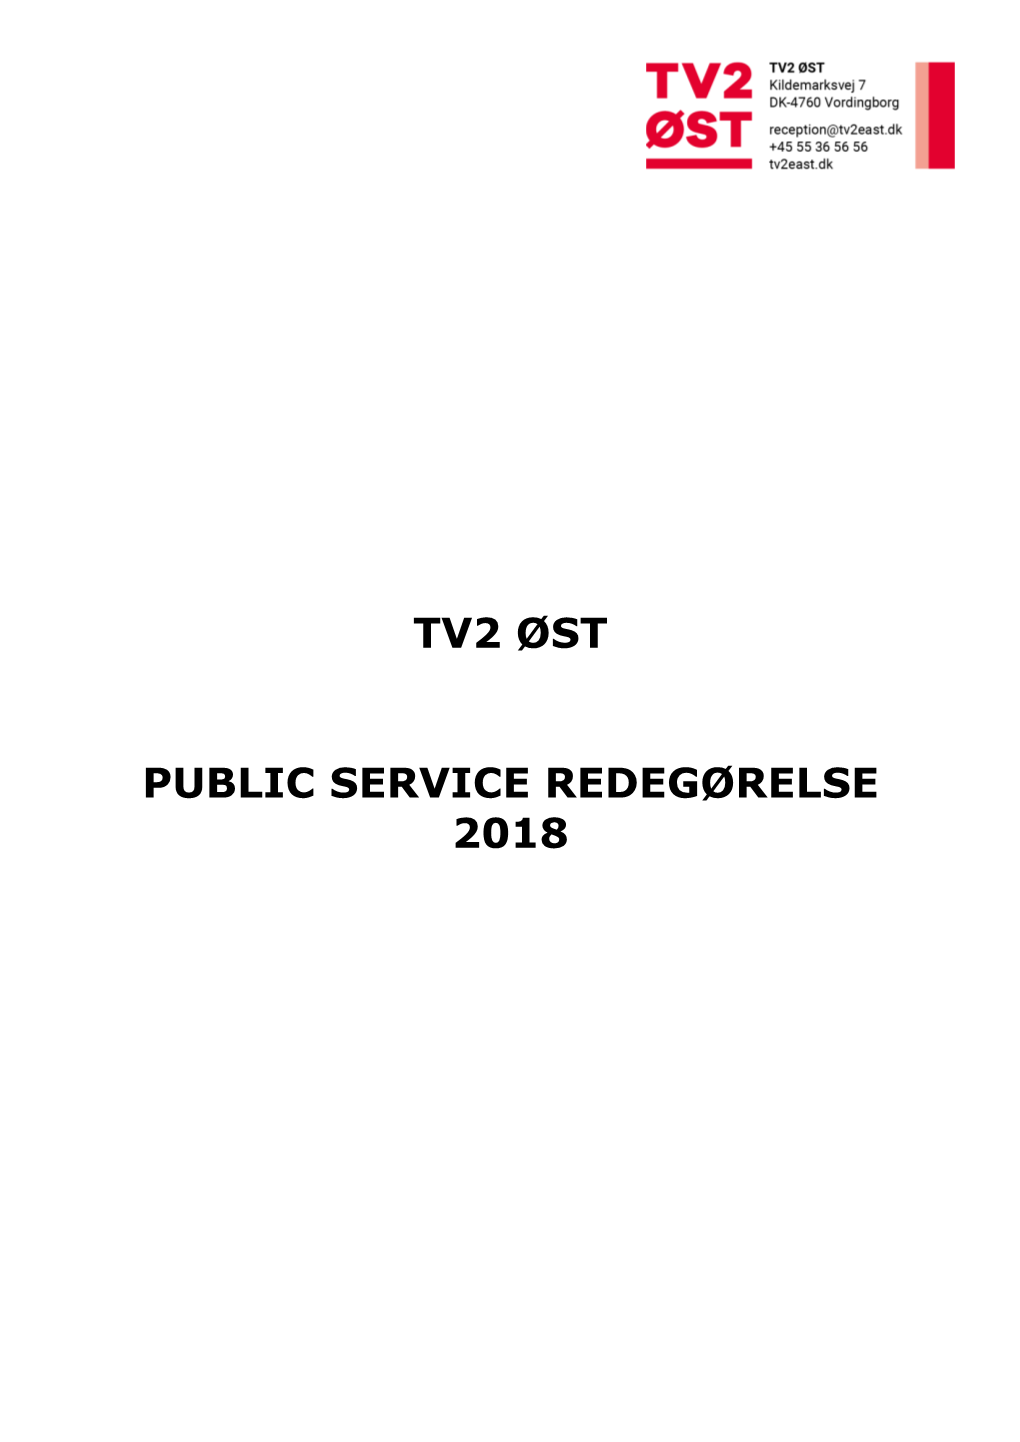 TV2 ØST Public Service-Redegørelse 2018